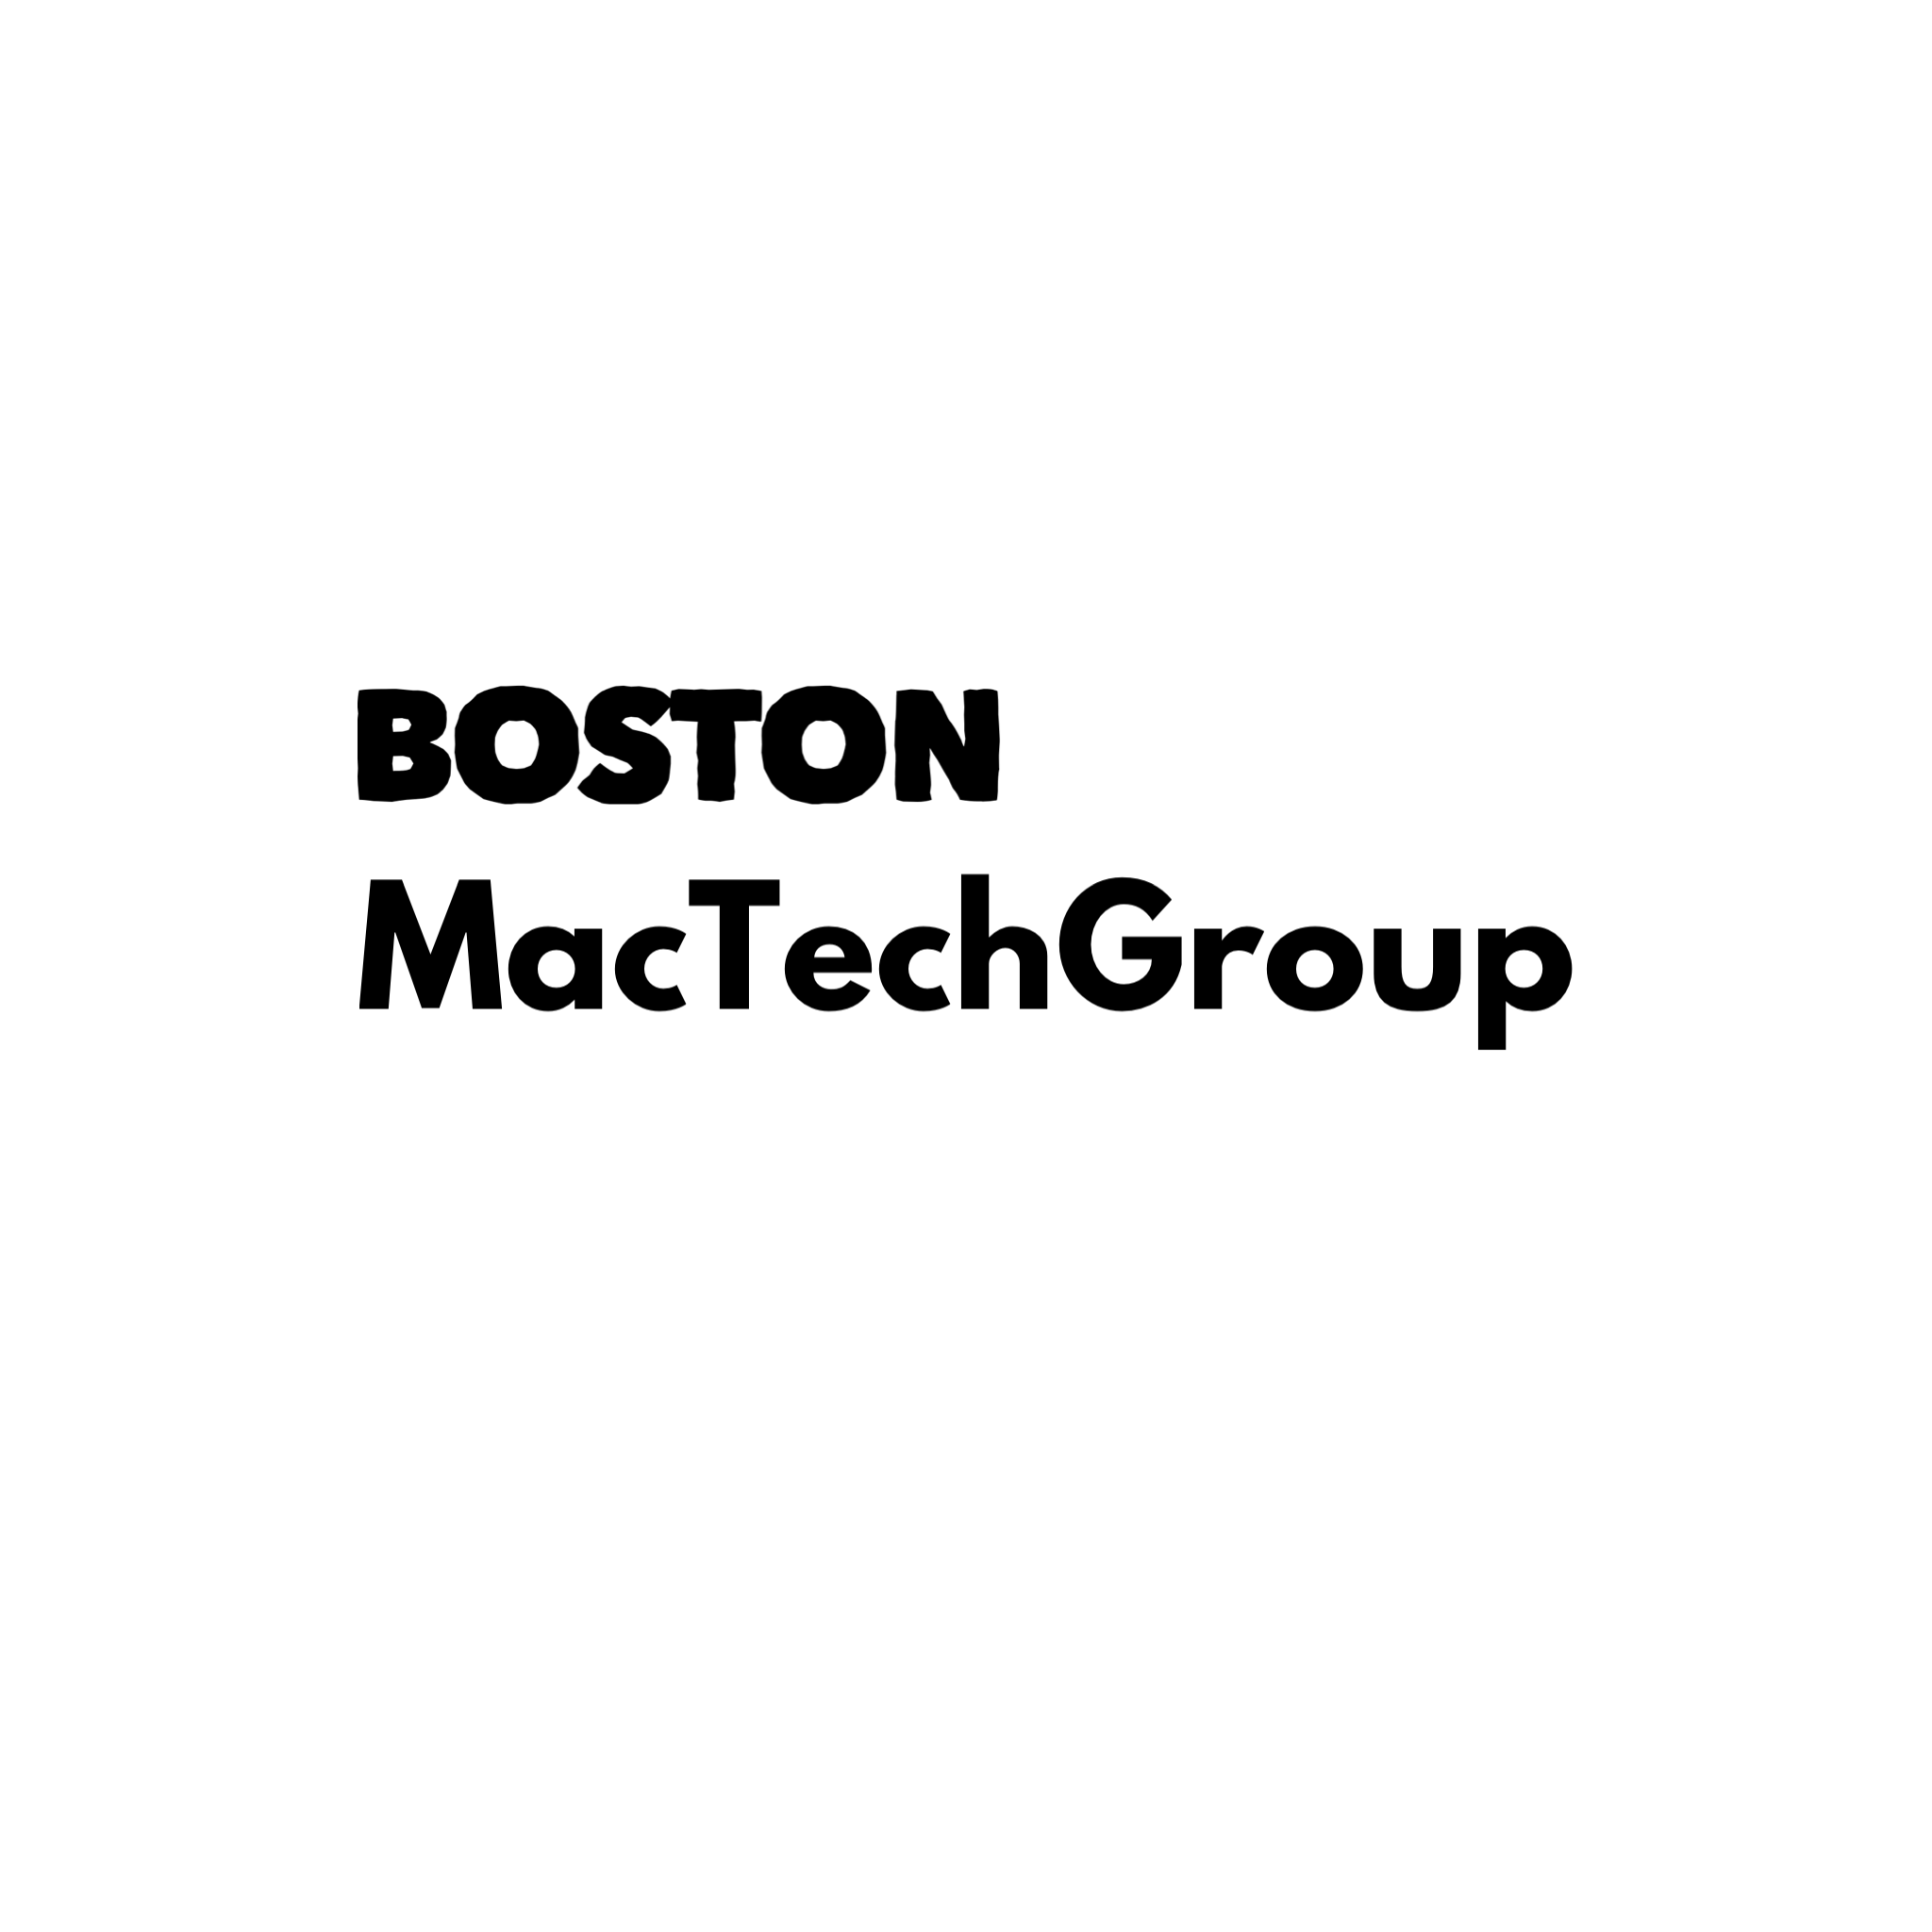 Boston MacTechGroup